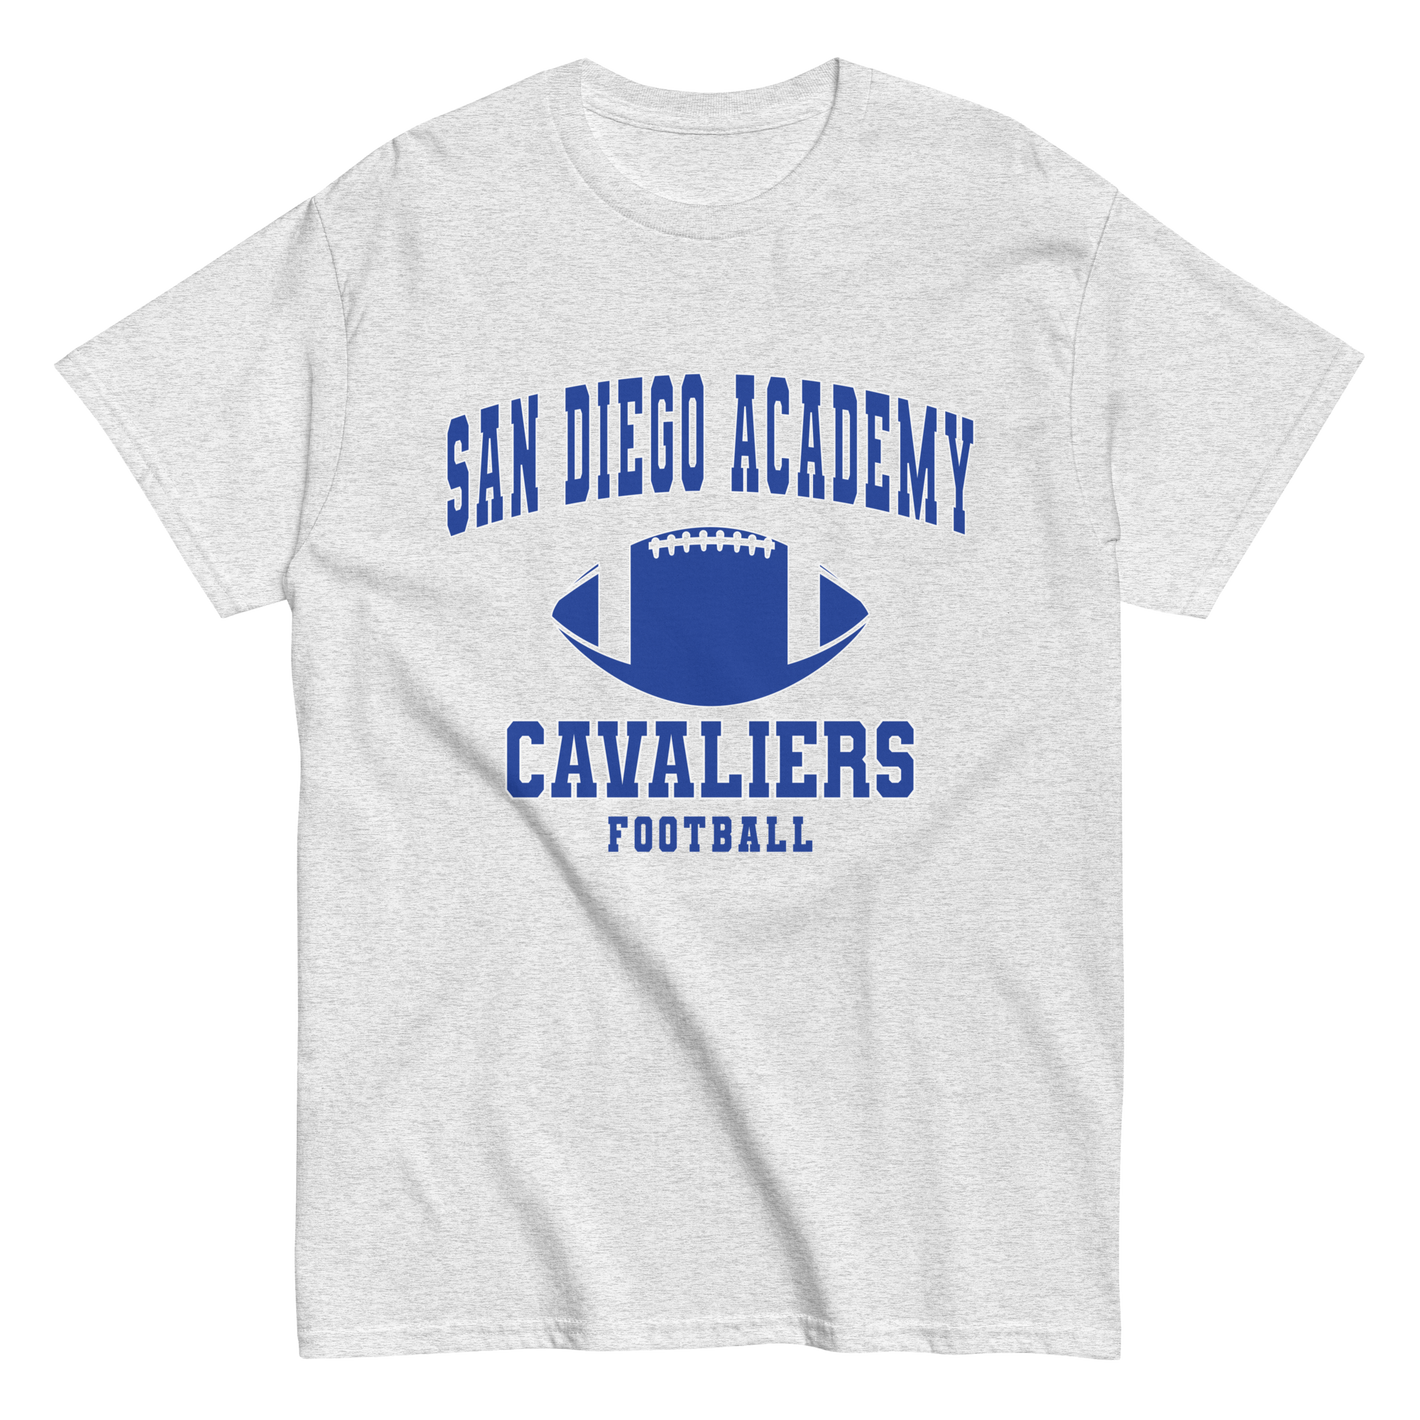 San Diego Academy Football classic tee